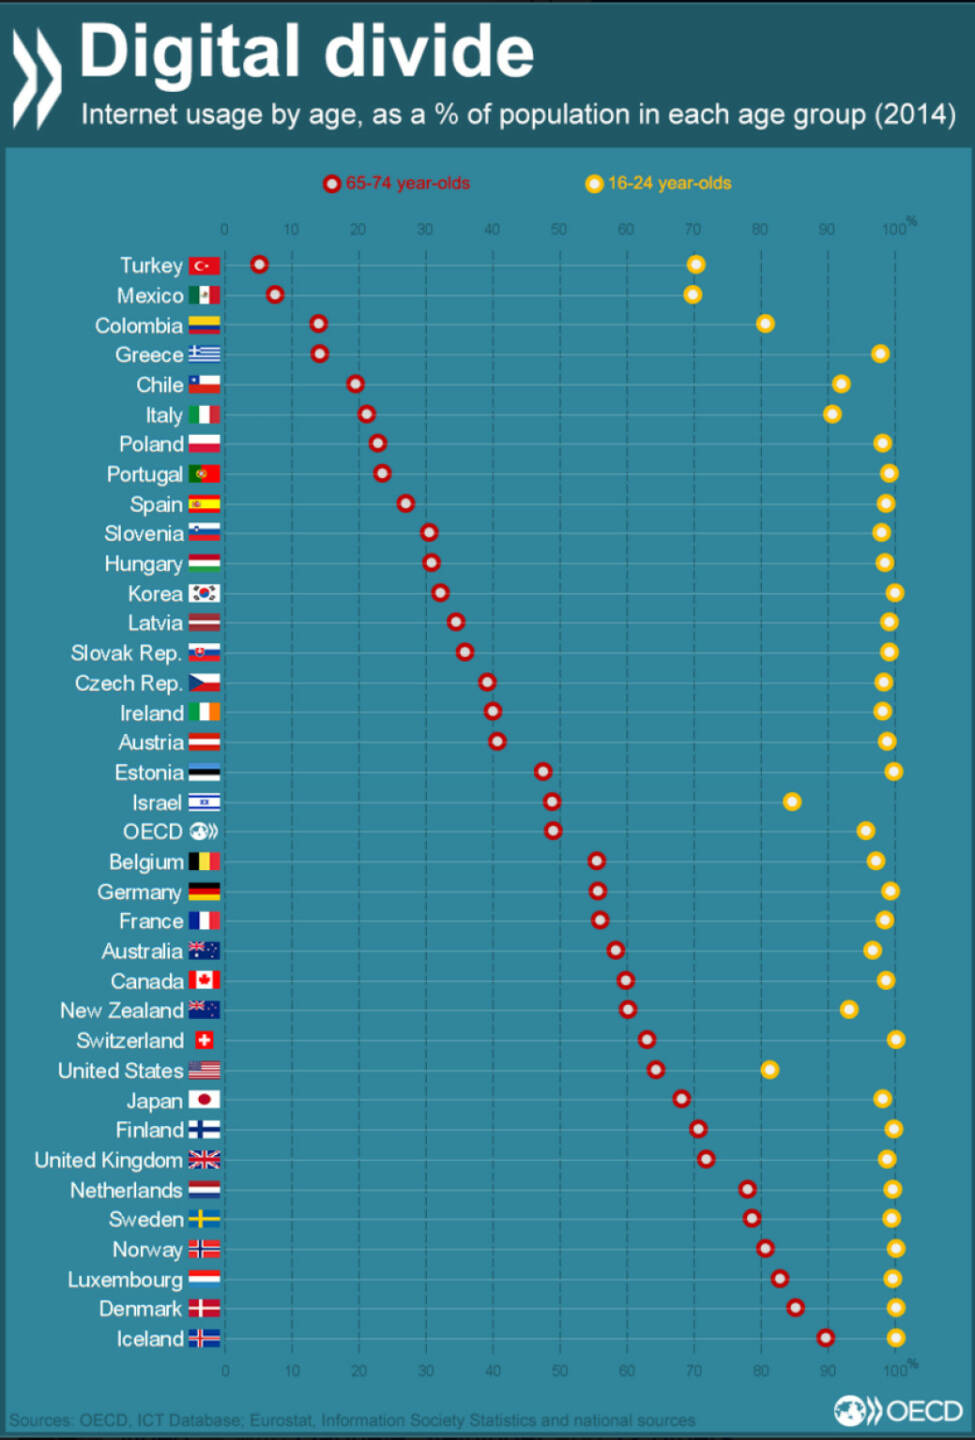 Internetnutzung nach Altersgruppen (16-24 und 65-74) in OECD-Ländern: Griechenland, Polen und Portugal mit größten Lücken zwischen den Generationen http://bit.ly/1WX2rQf